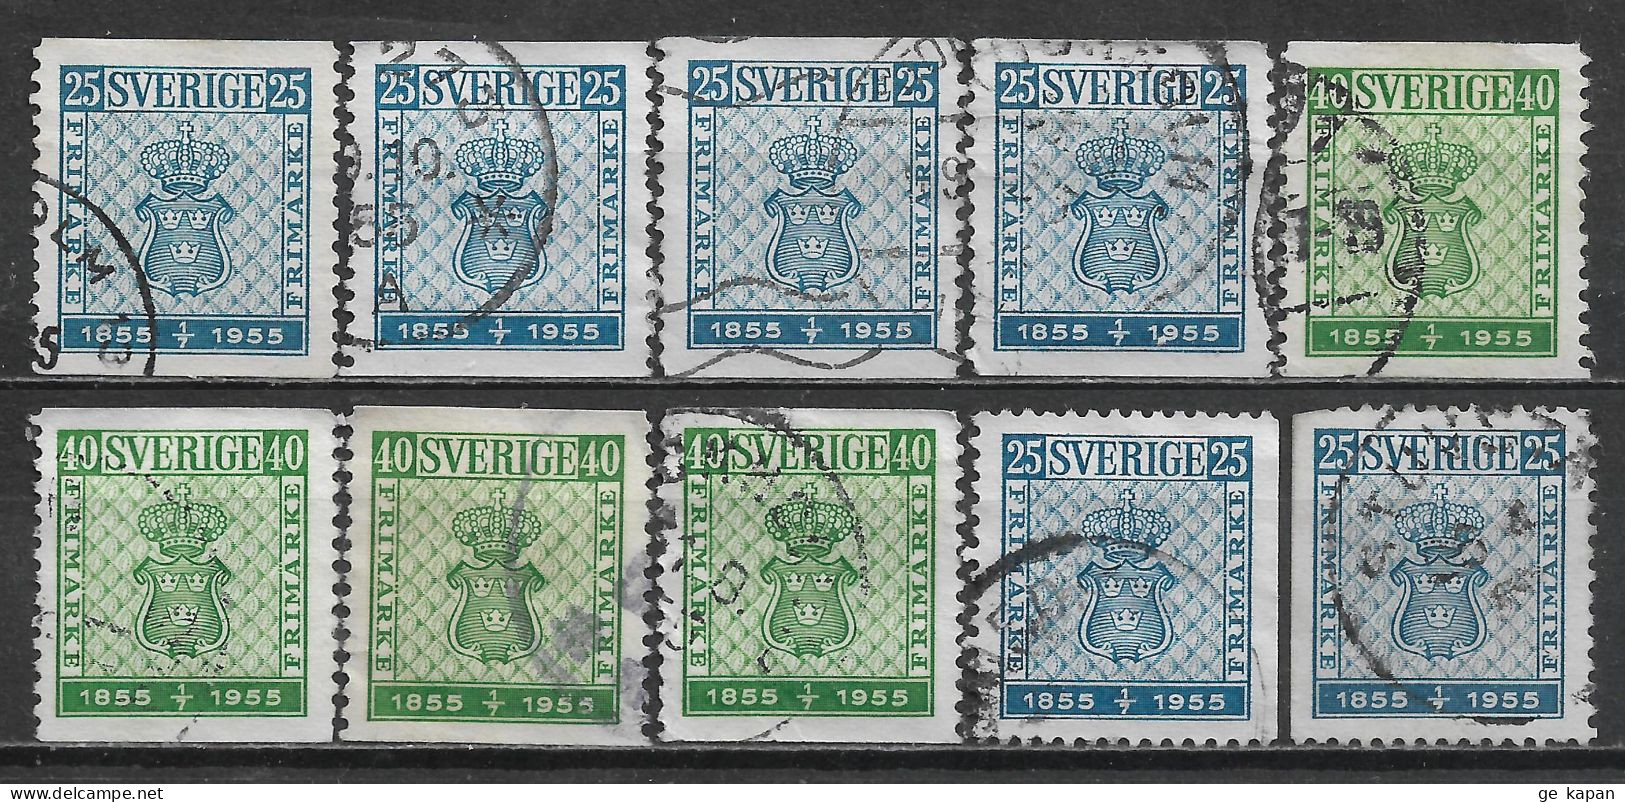 1955 SWEDEN Set Of 10 Used Stamps (Scott # 474-476) CV $2.60 - Used Stamps